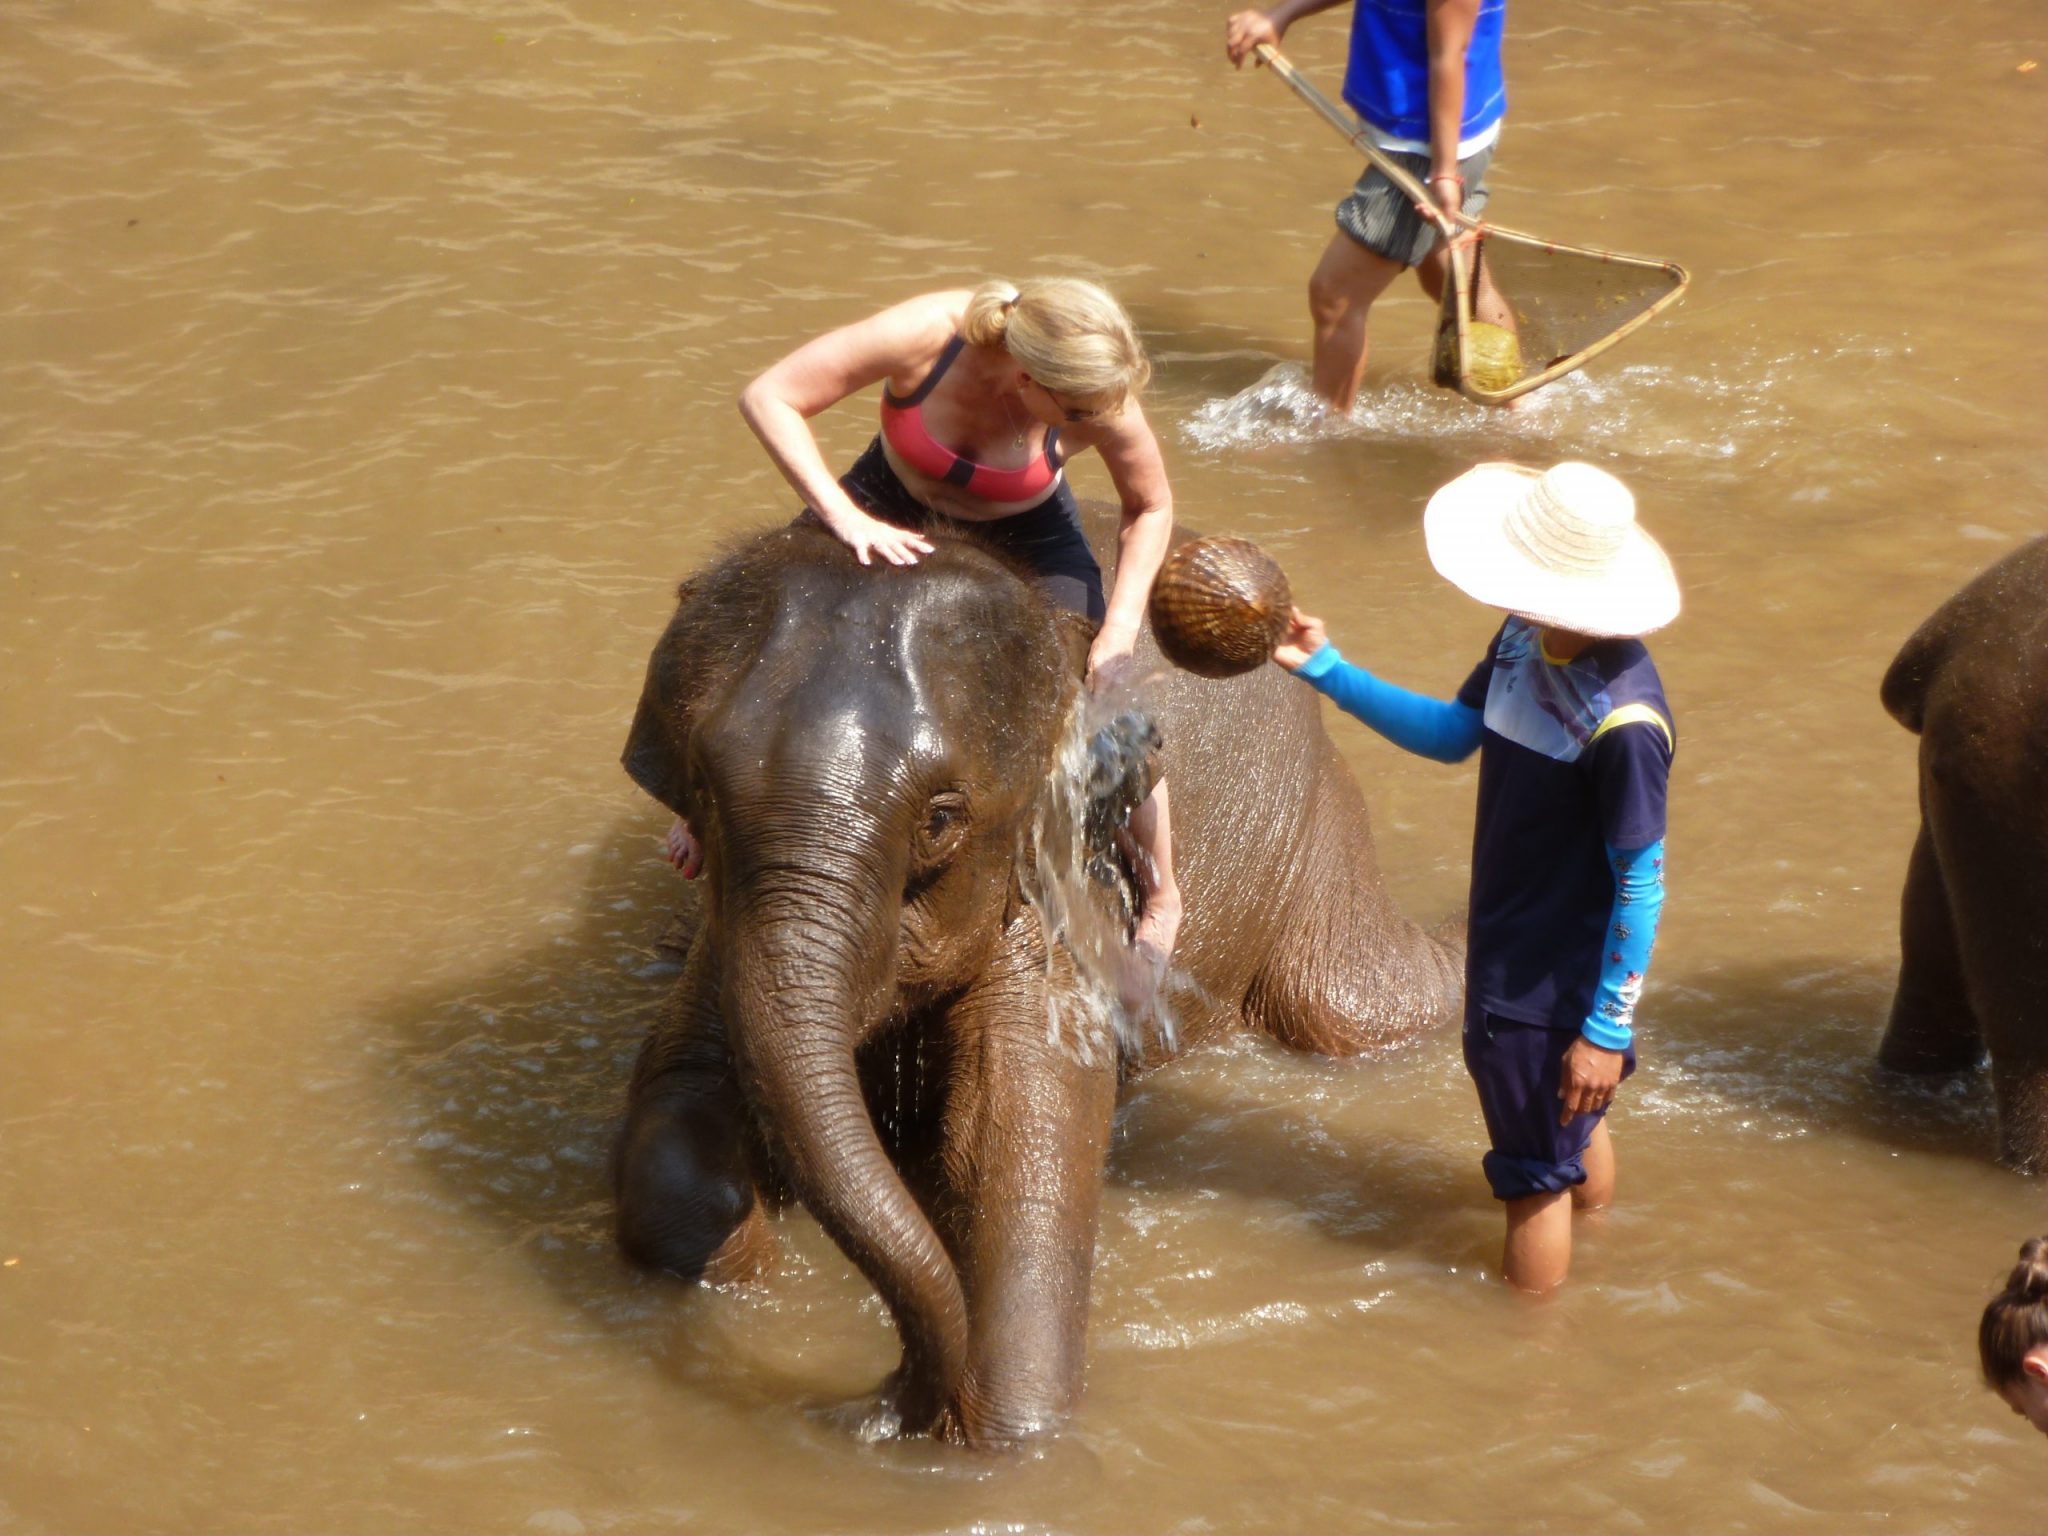 Elephant taking a bath, copyright ANIMONDIAL